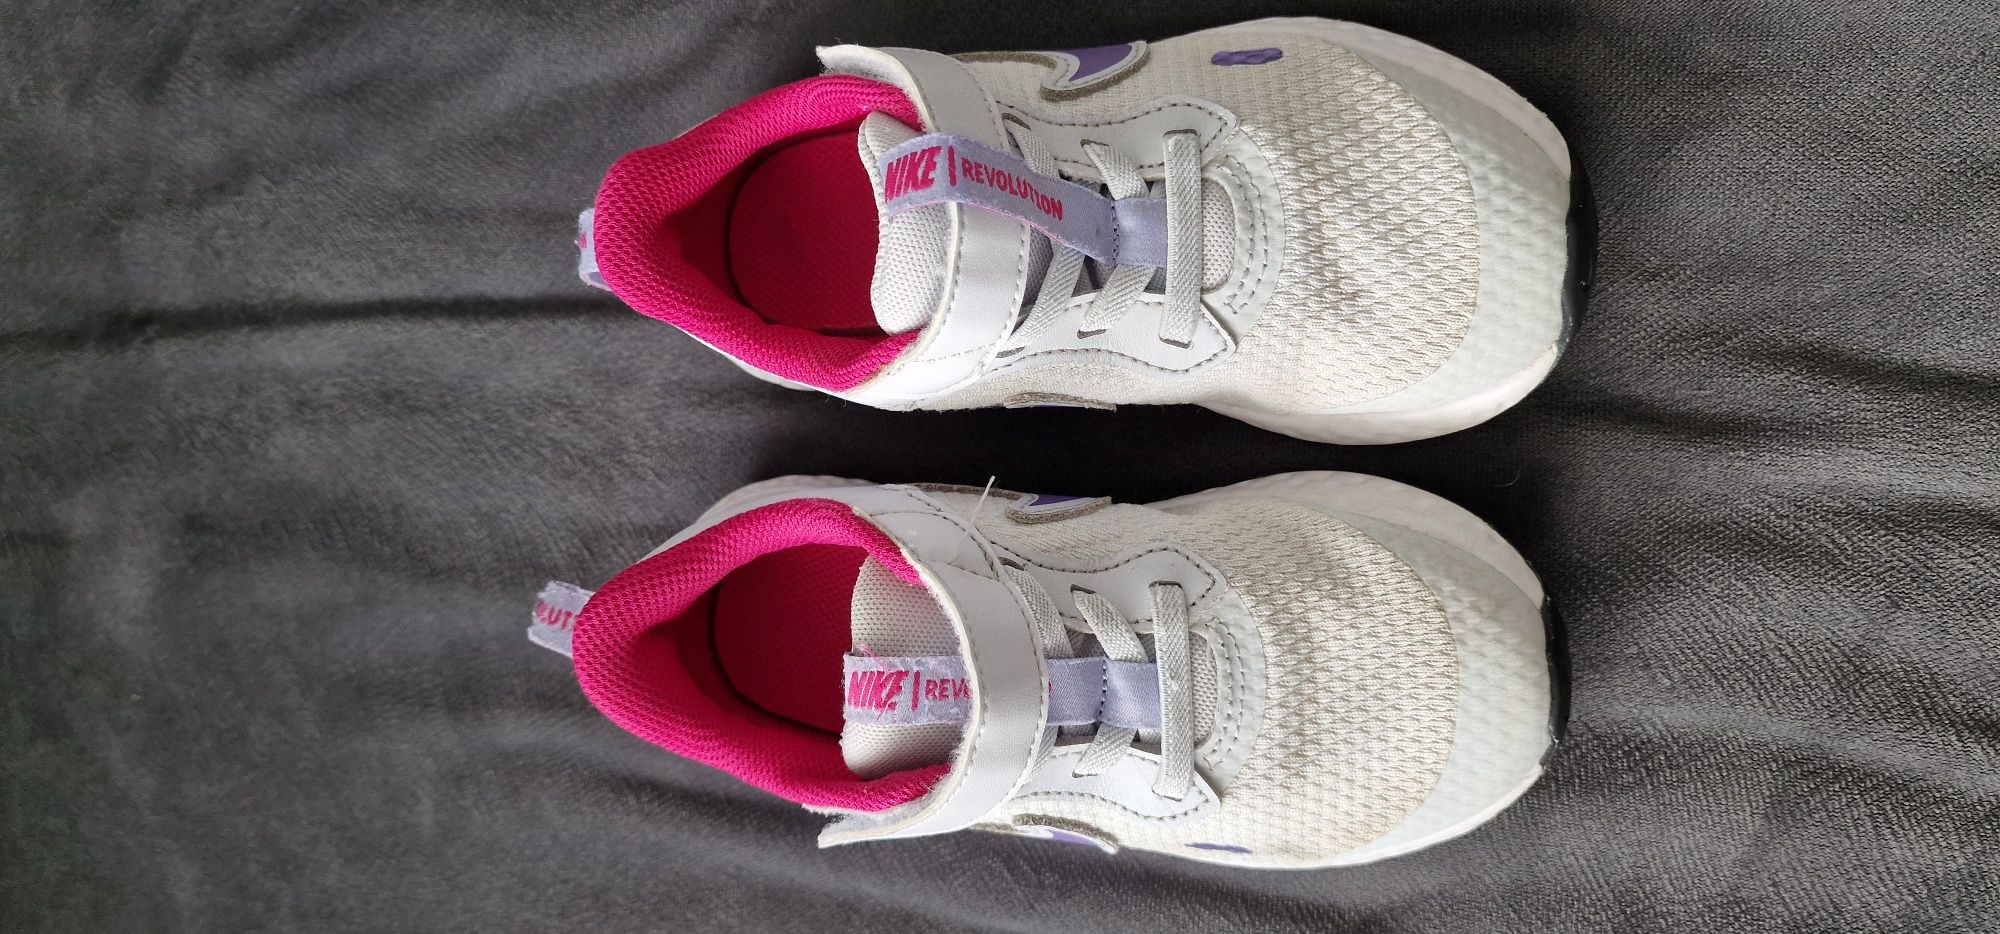 Buty sportowe adidasy Nike dziecięce sportowe roz. 10.5 eu 27.5 cm16.5